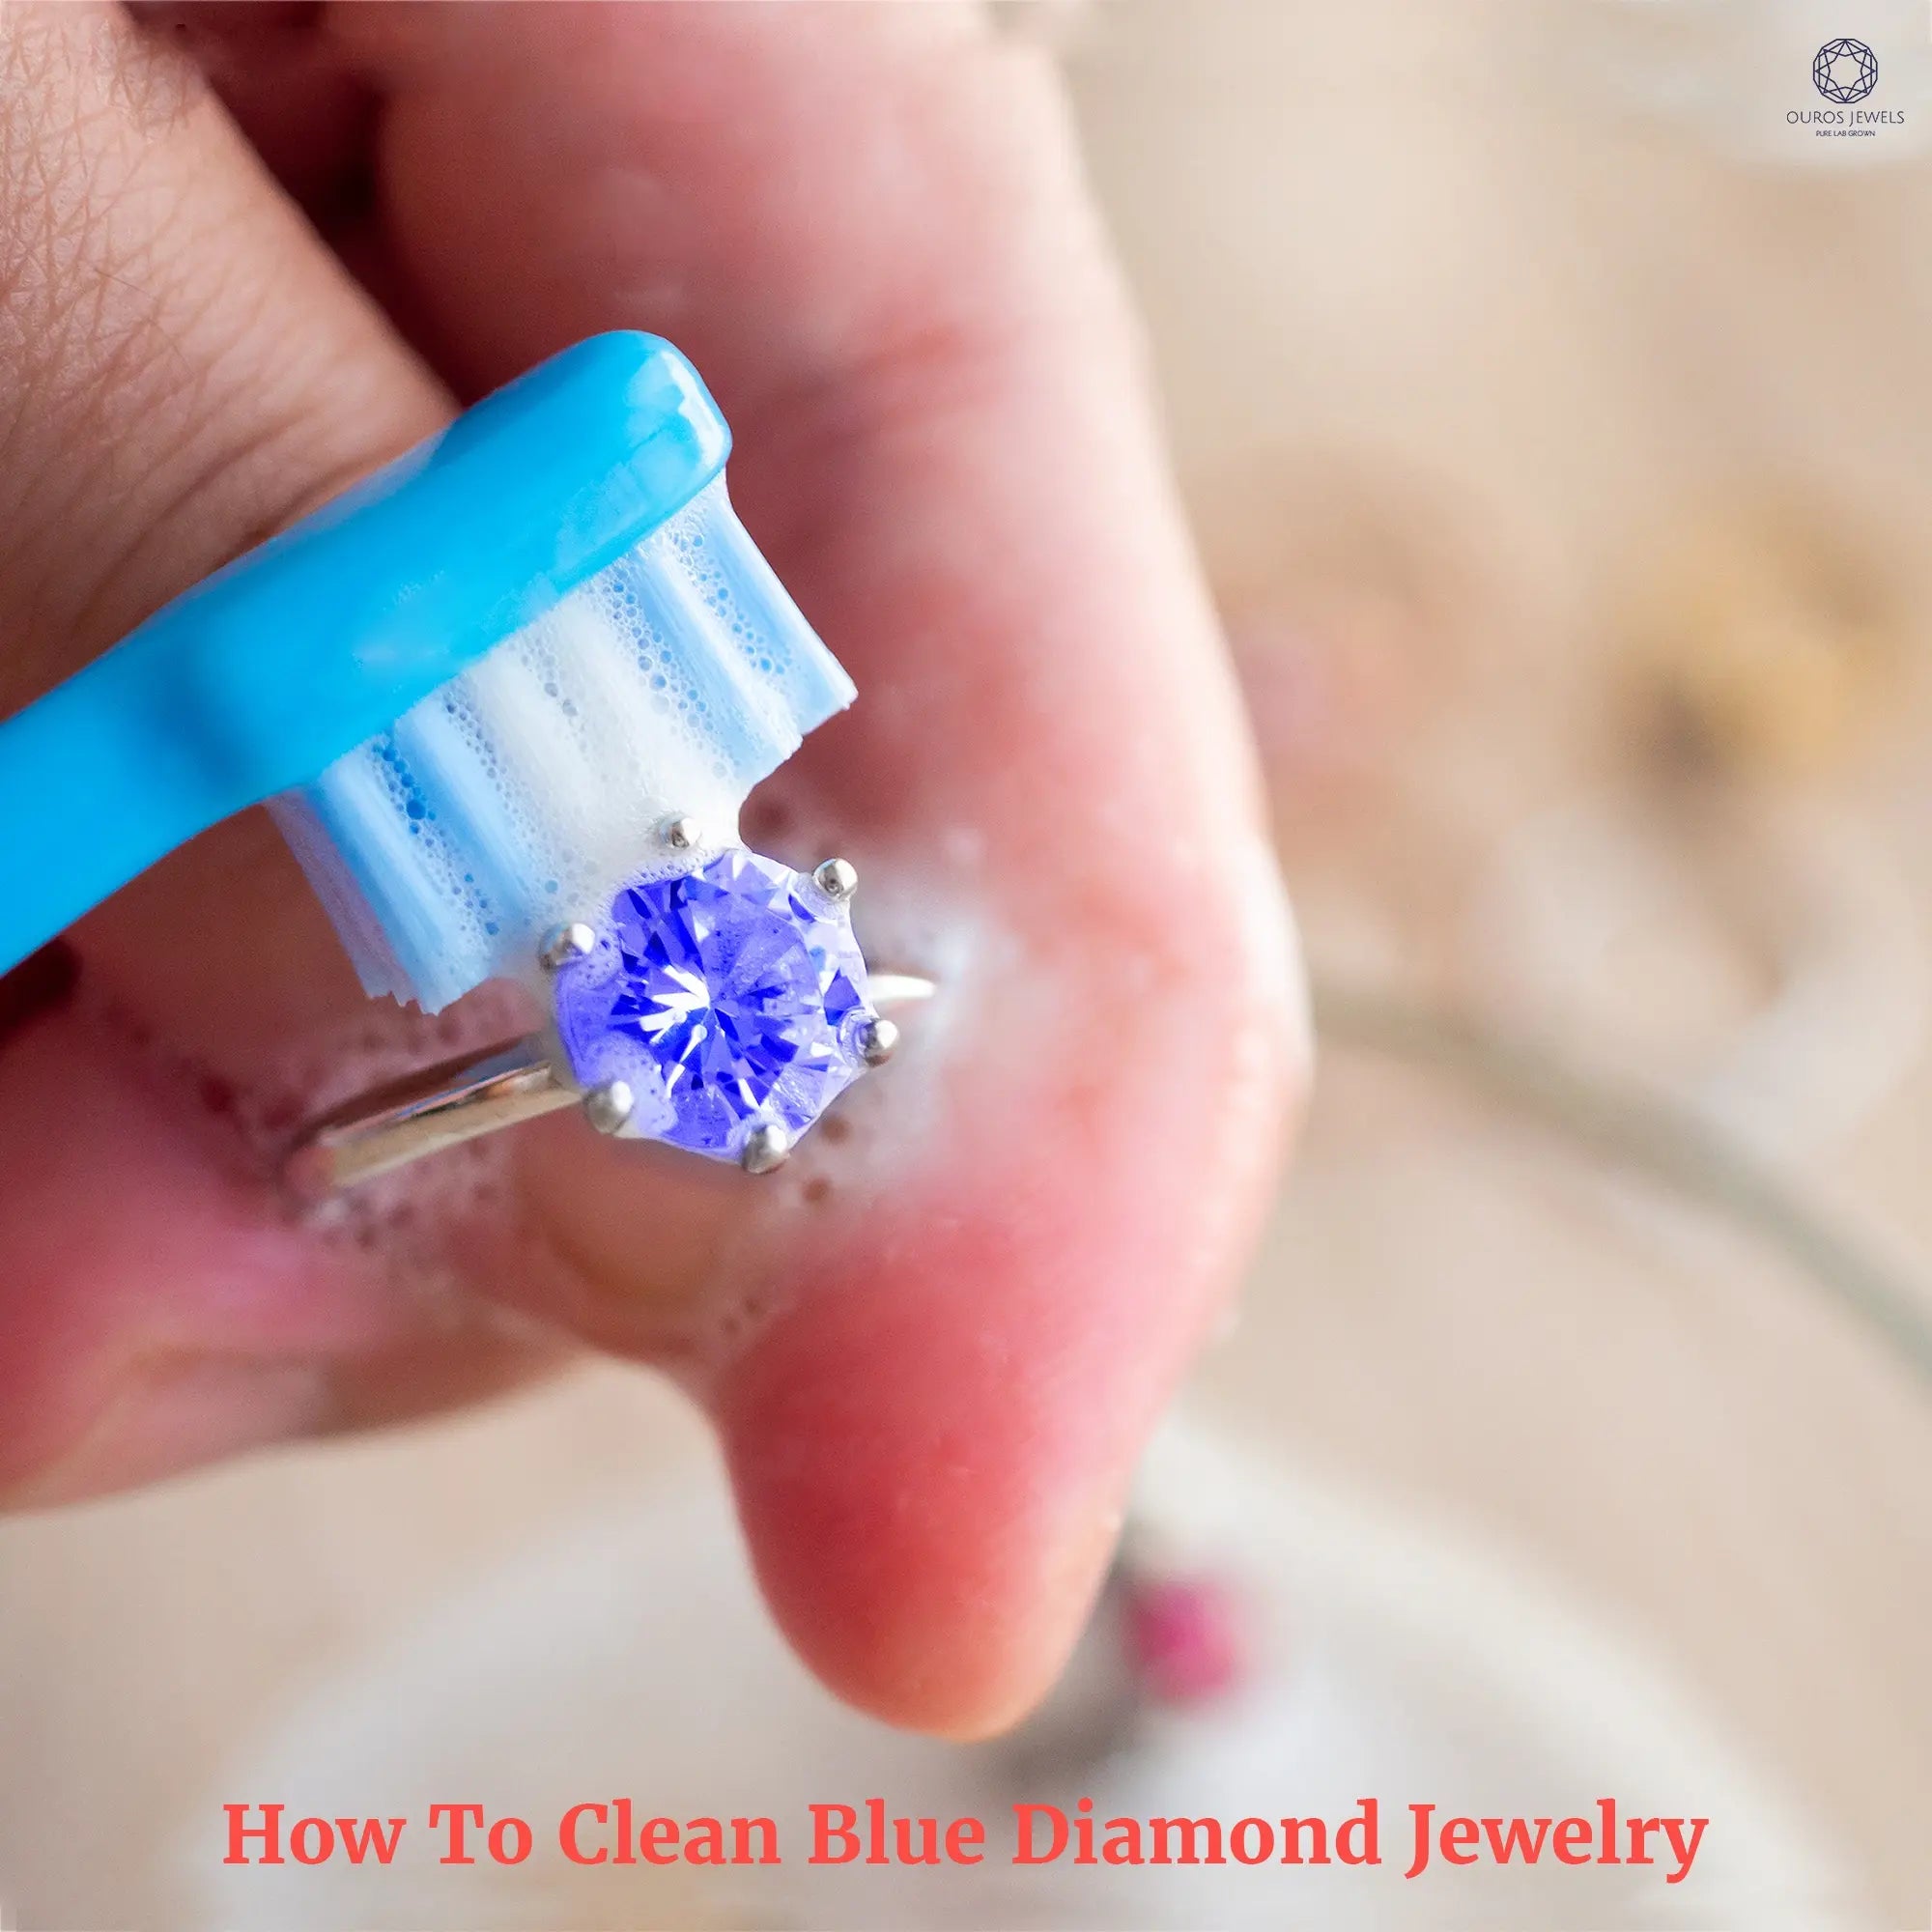 Blue Zircon Earrings for SALE - Gorgeous Zircon Genuine Gemstone Earrings